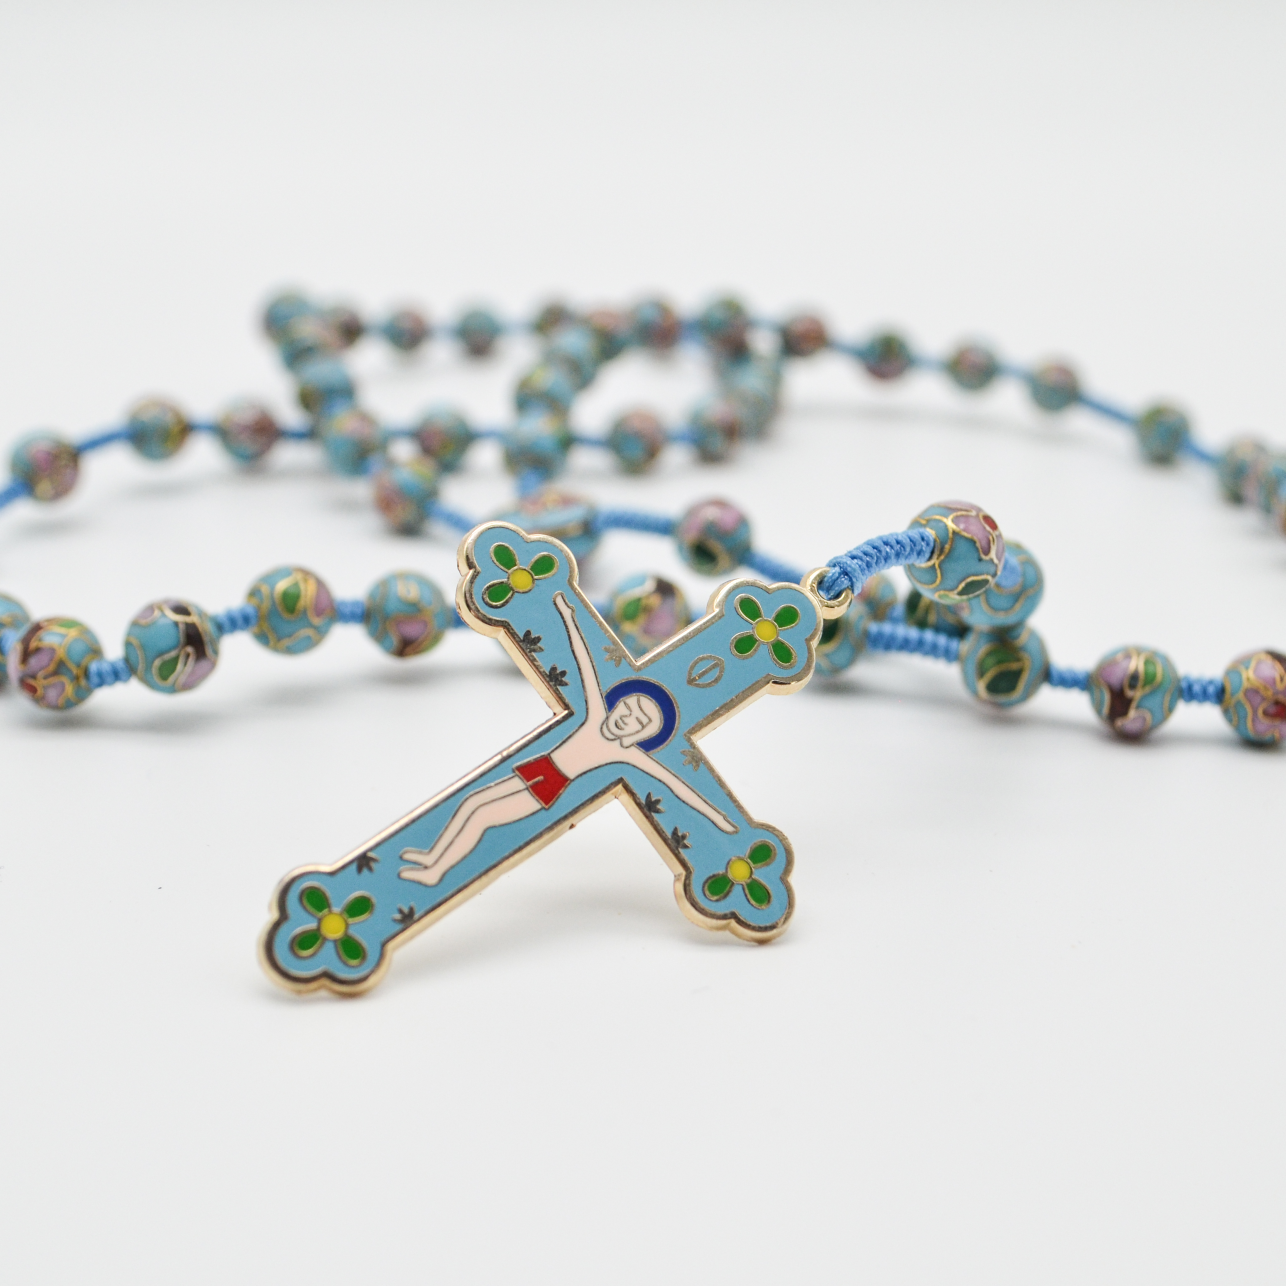 Pro-Life Cloisonné Rosary